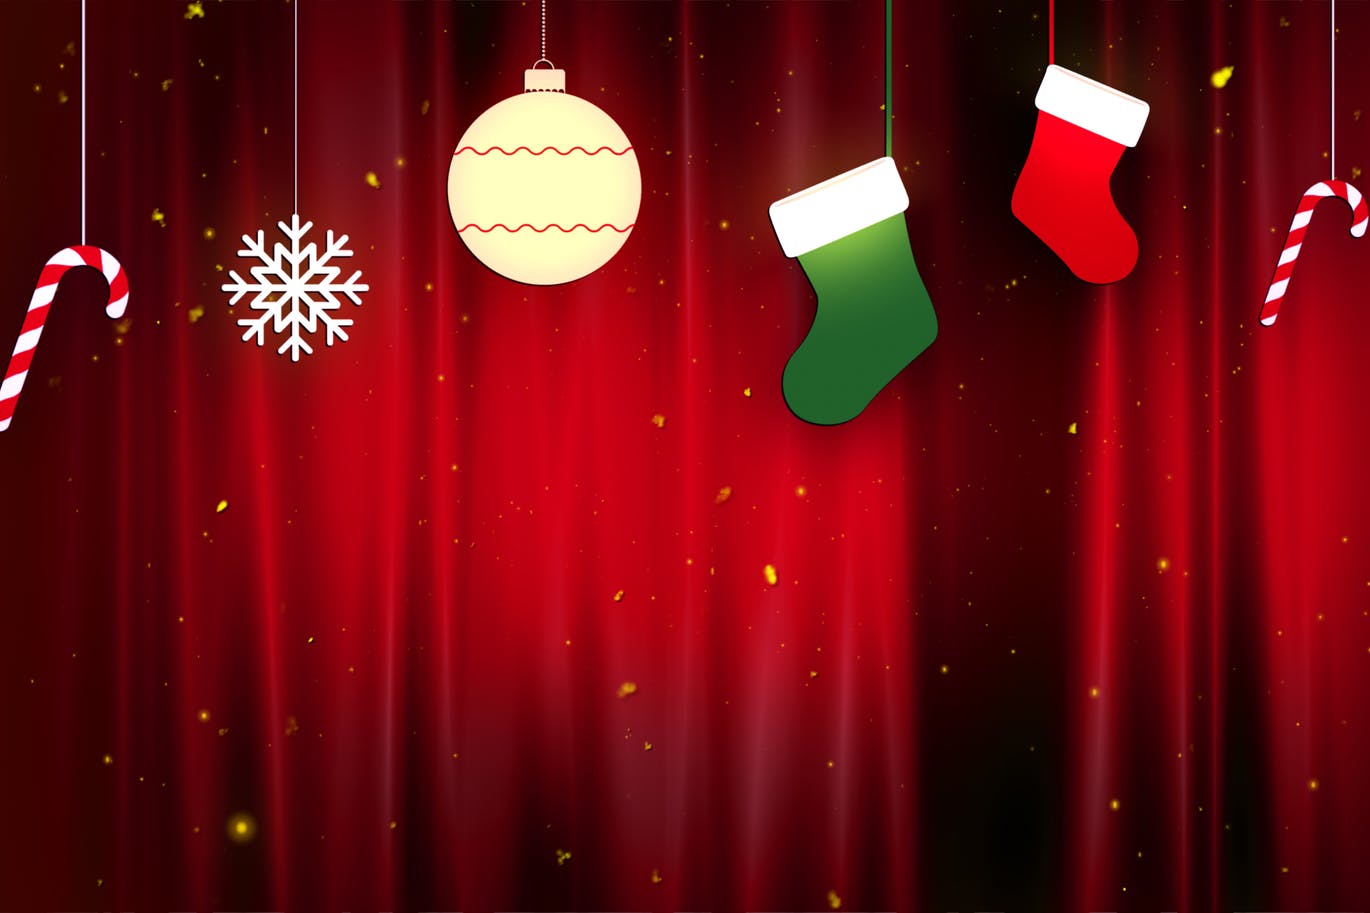 圣诞节节日主题高清布景图片素材 Christmas Cloth Ornaments插图